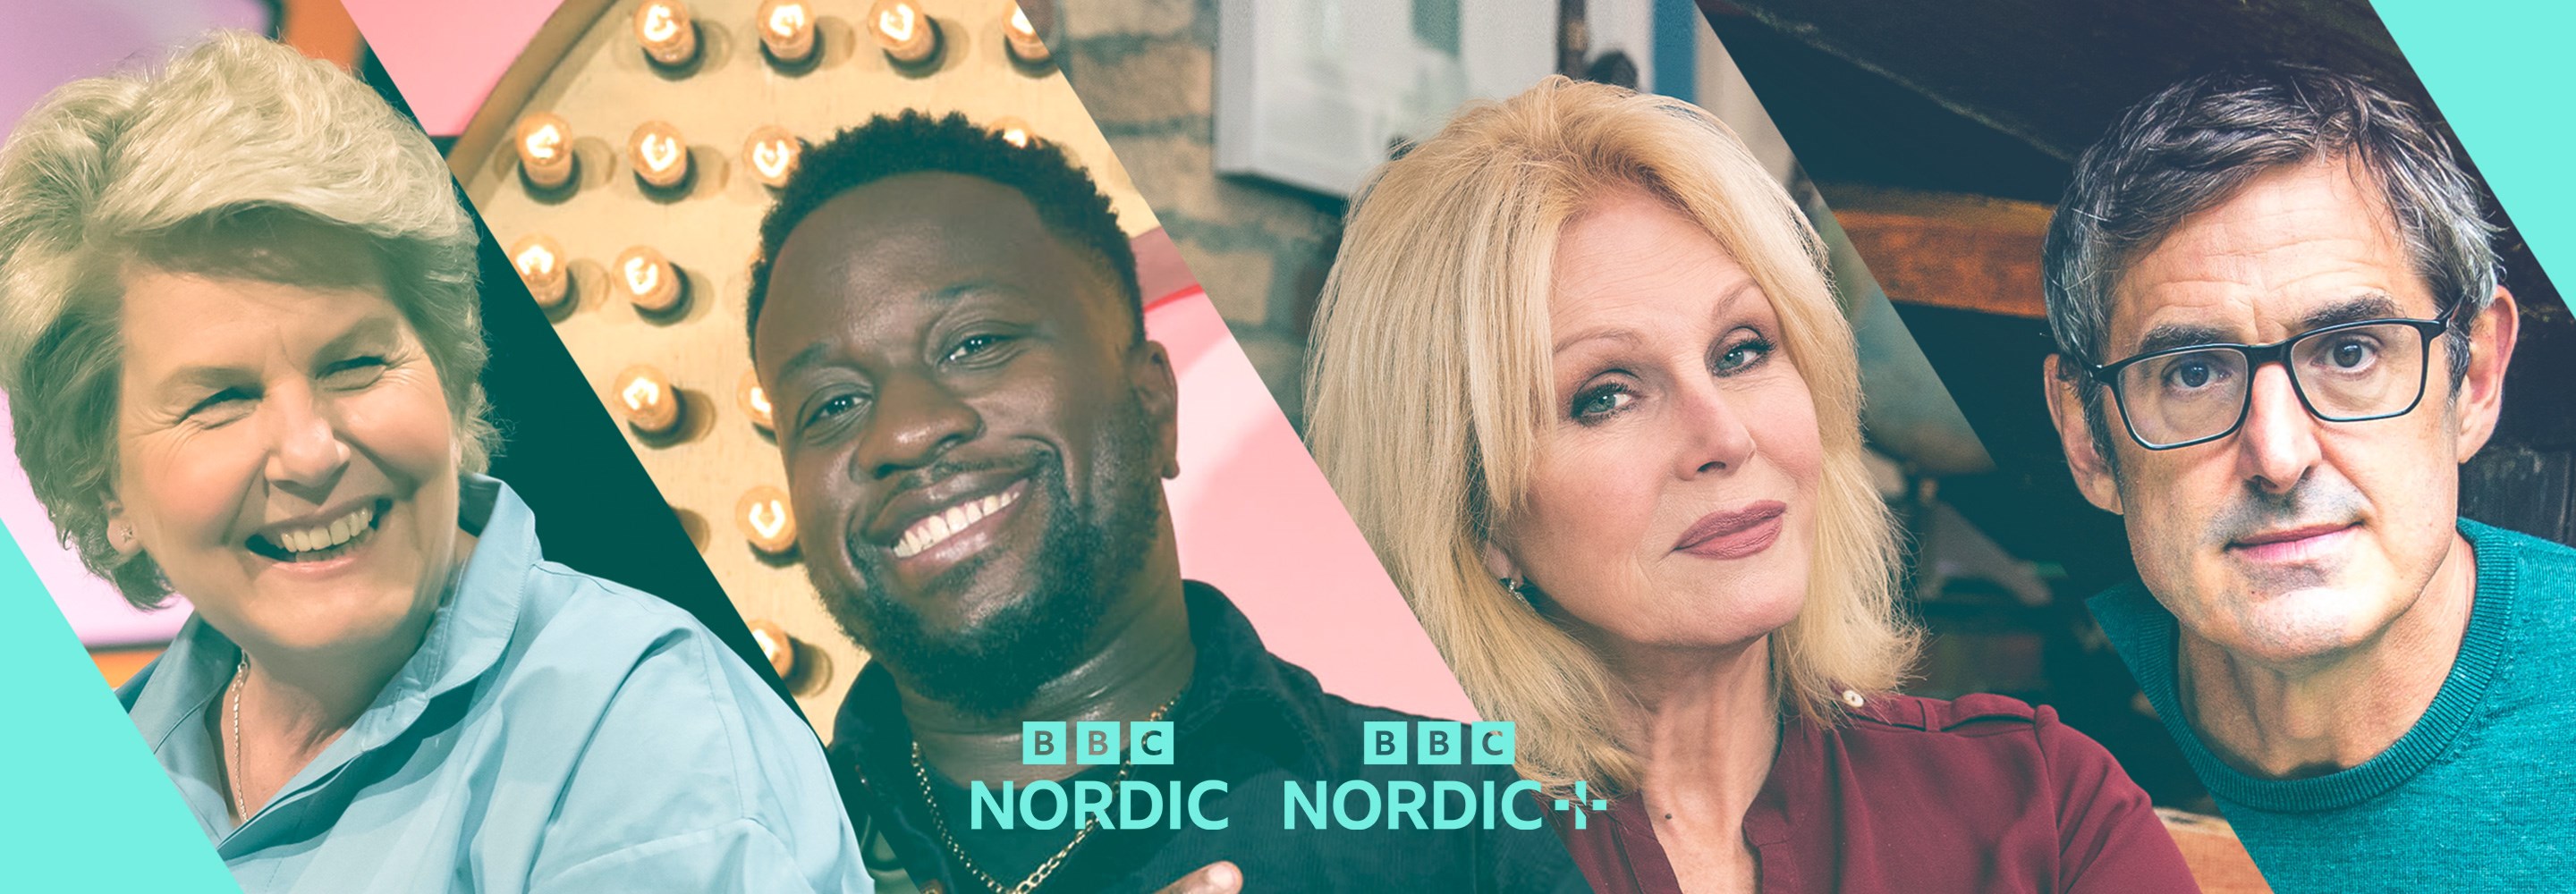 Upptäck BBC Nordic och BBC Nordic+